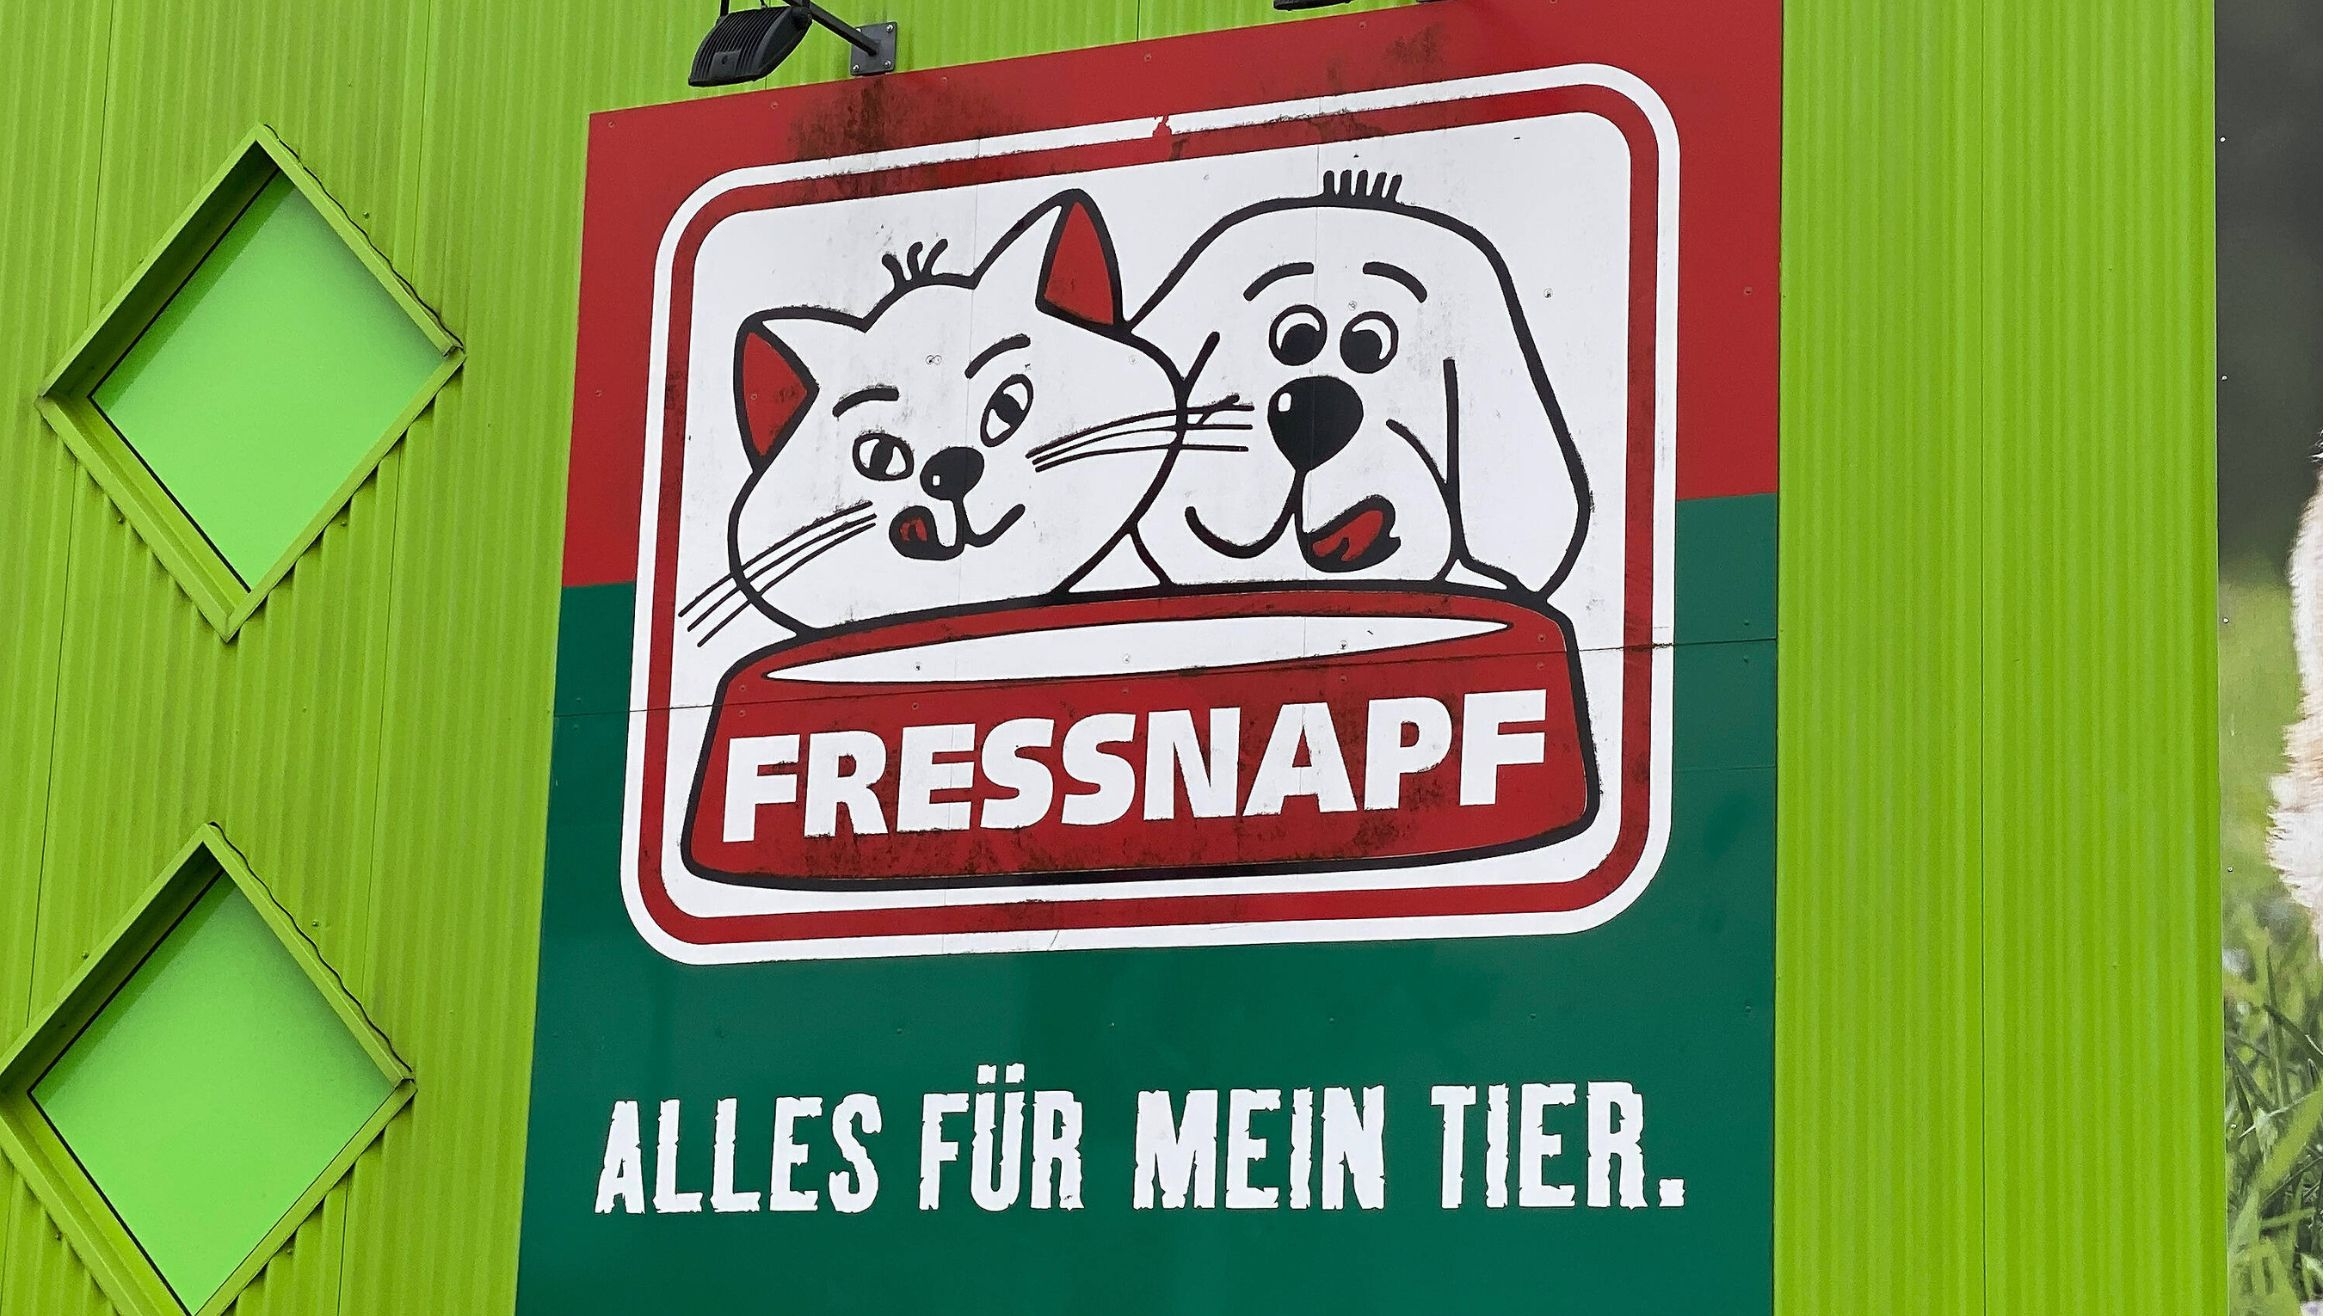 Das Handelsunternehmen Fressnapf hat seine Zentrale in Krefeld –  